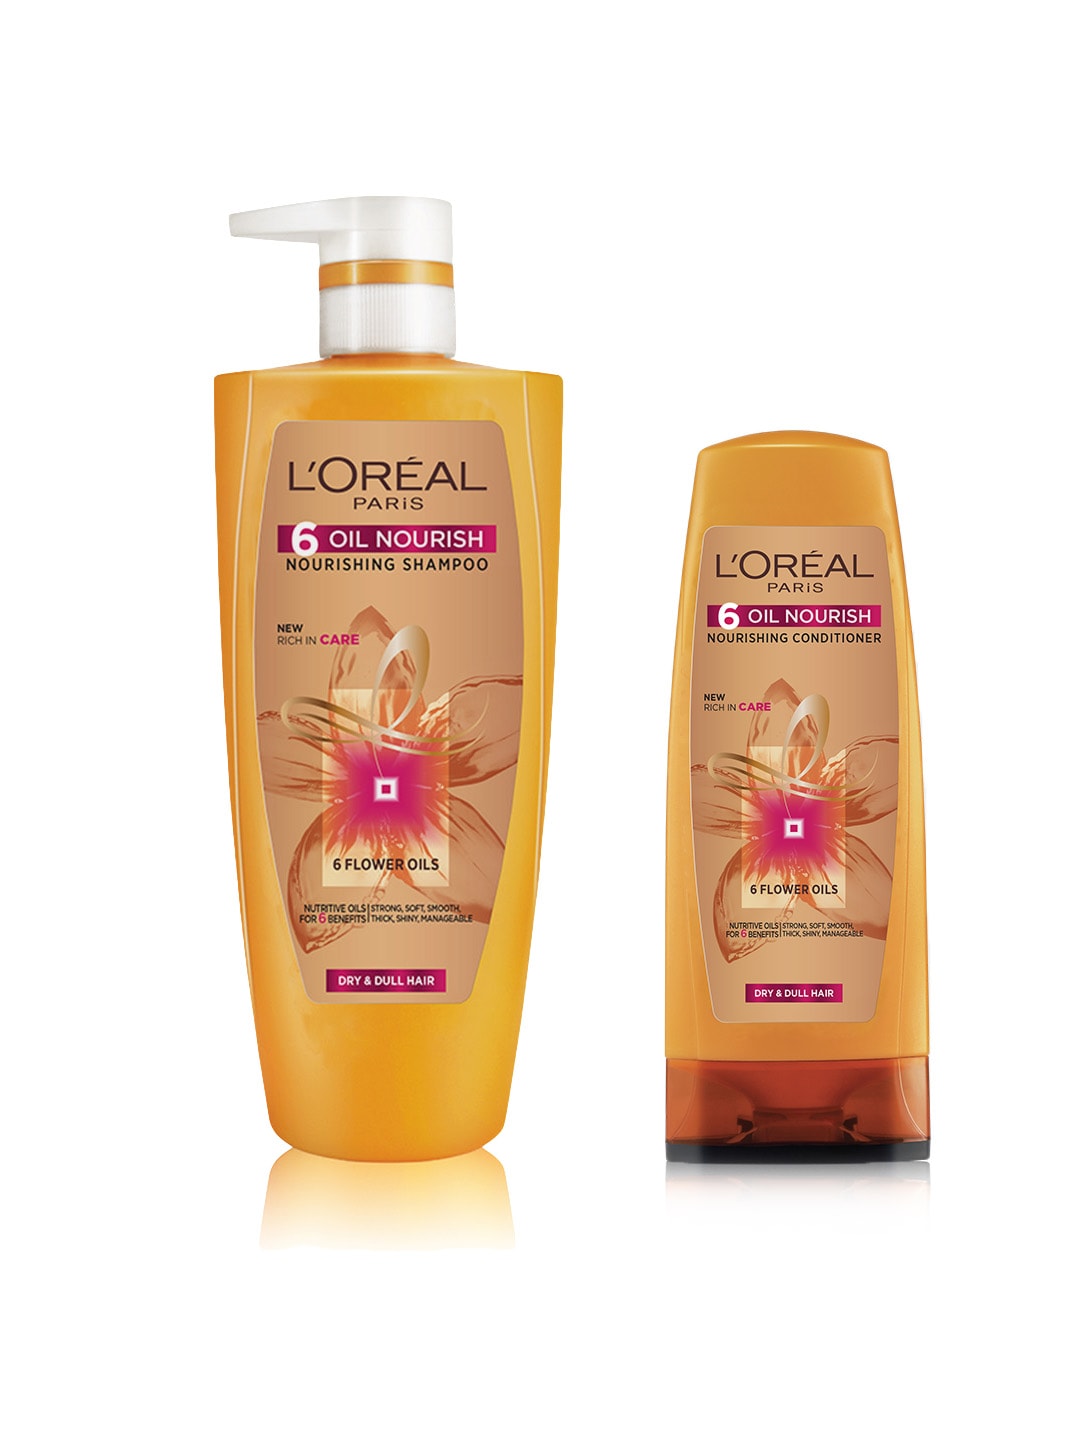 LOreal Paris 6 Oil Nourish Shampoo with Conditioner Price in India